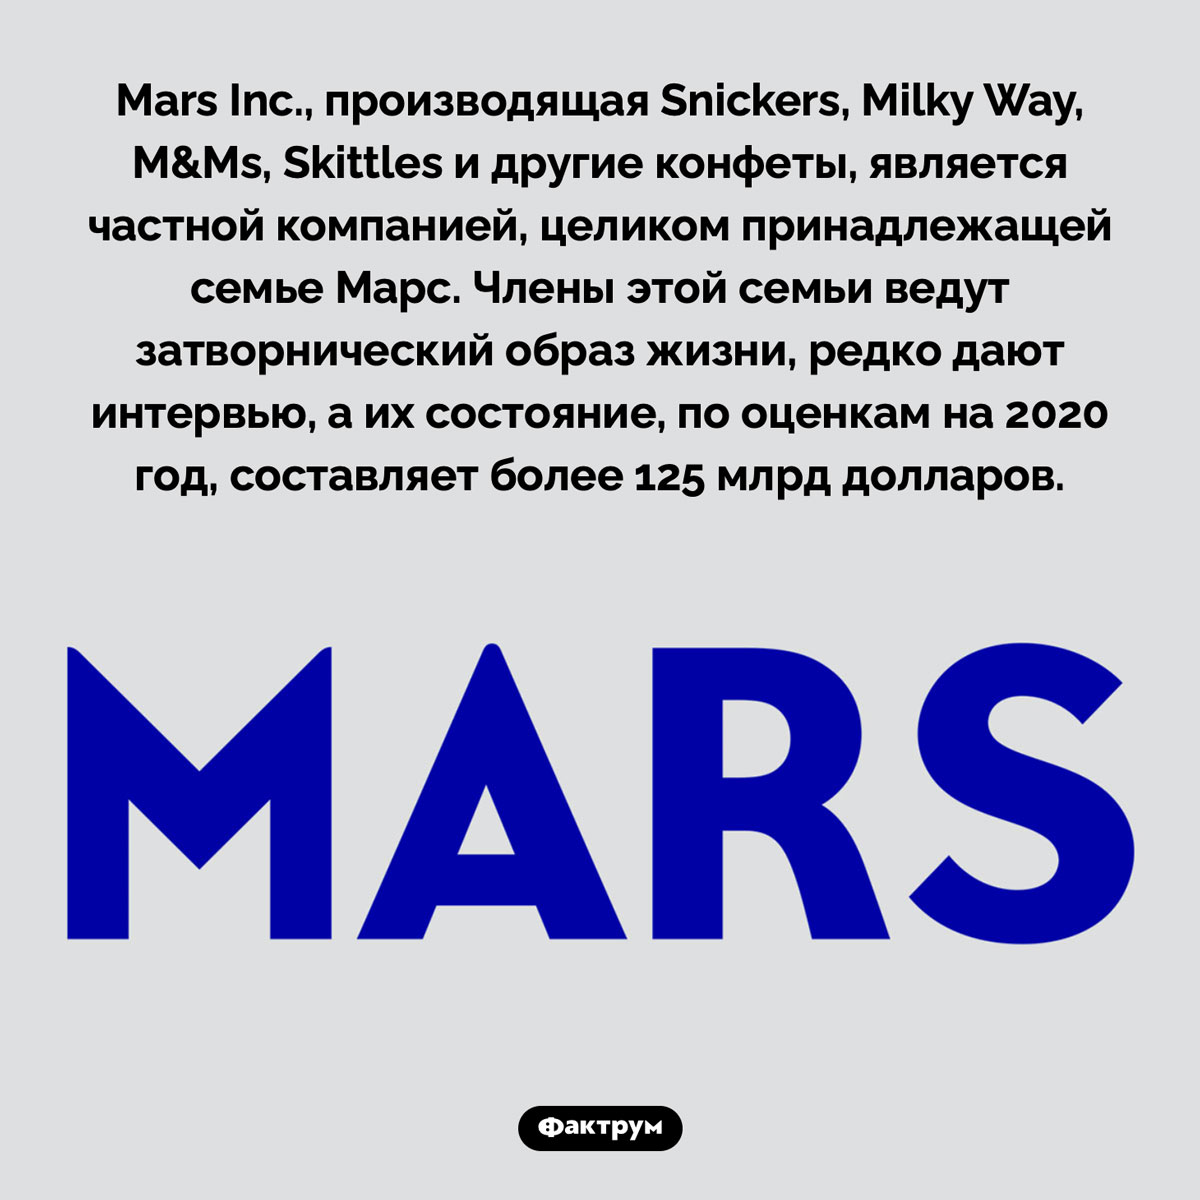 Кто владеет компанией Mars Inc.. Mars Inc., производящая Snickers, Milky Way, M&Ms, Skittles и другие конфеты, является частной компанией, целиком принадлежащей семье Марс. Члены этой семьи ведут затворнический образ жизни, редко дают интервью, а их состояние, по оценкам на 2020 год, составляет более 125 млрд долларов.